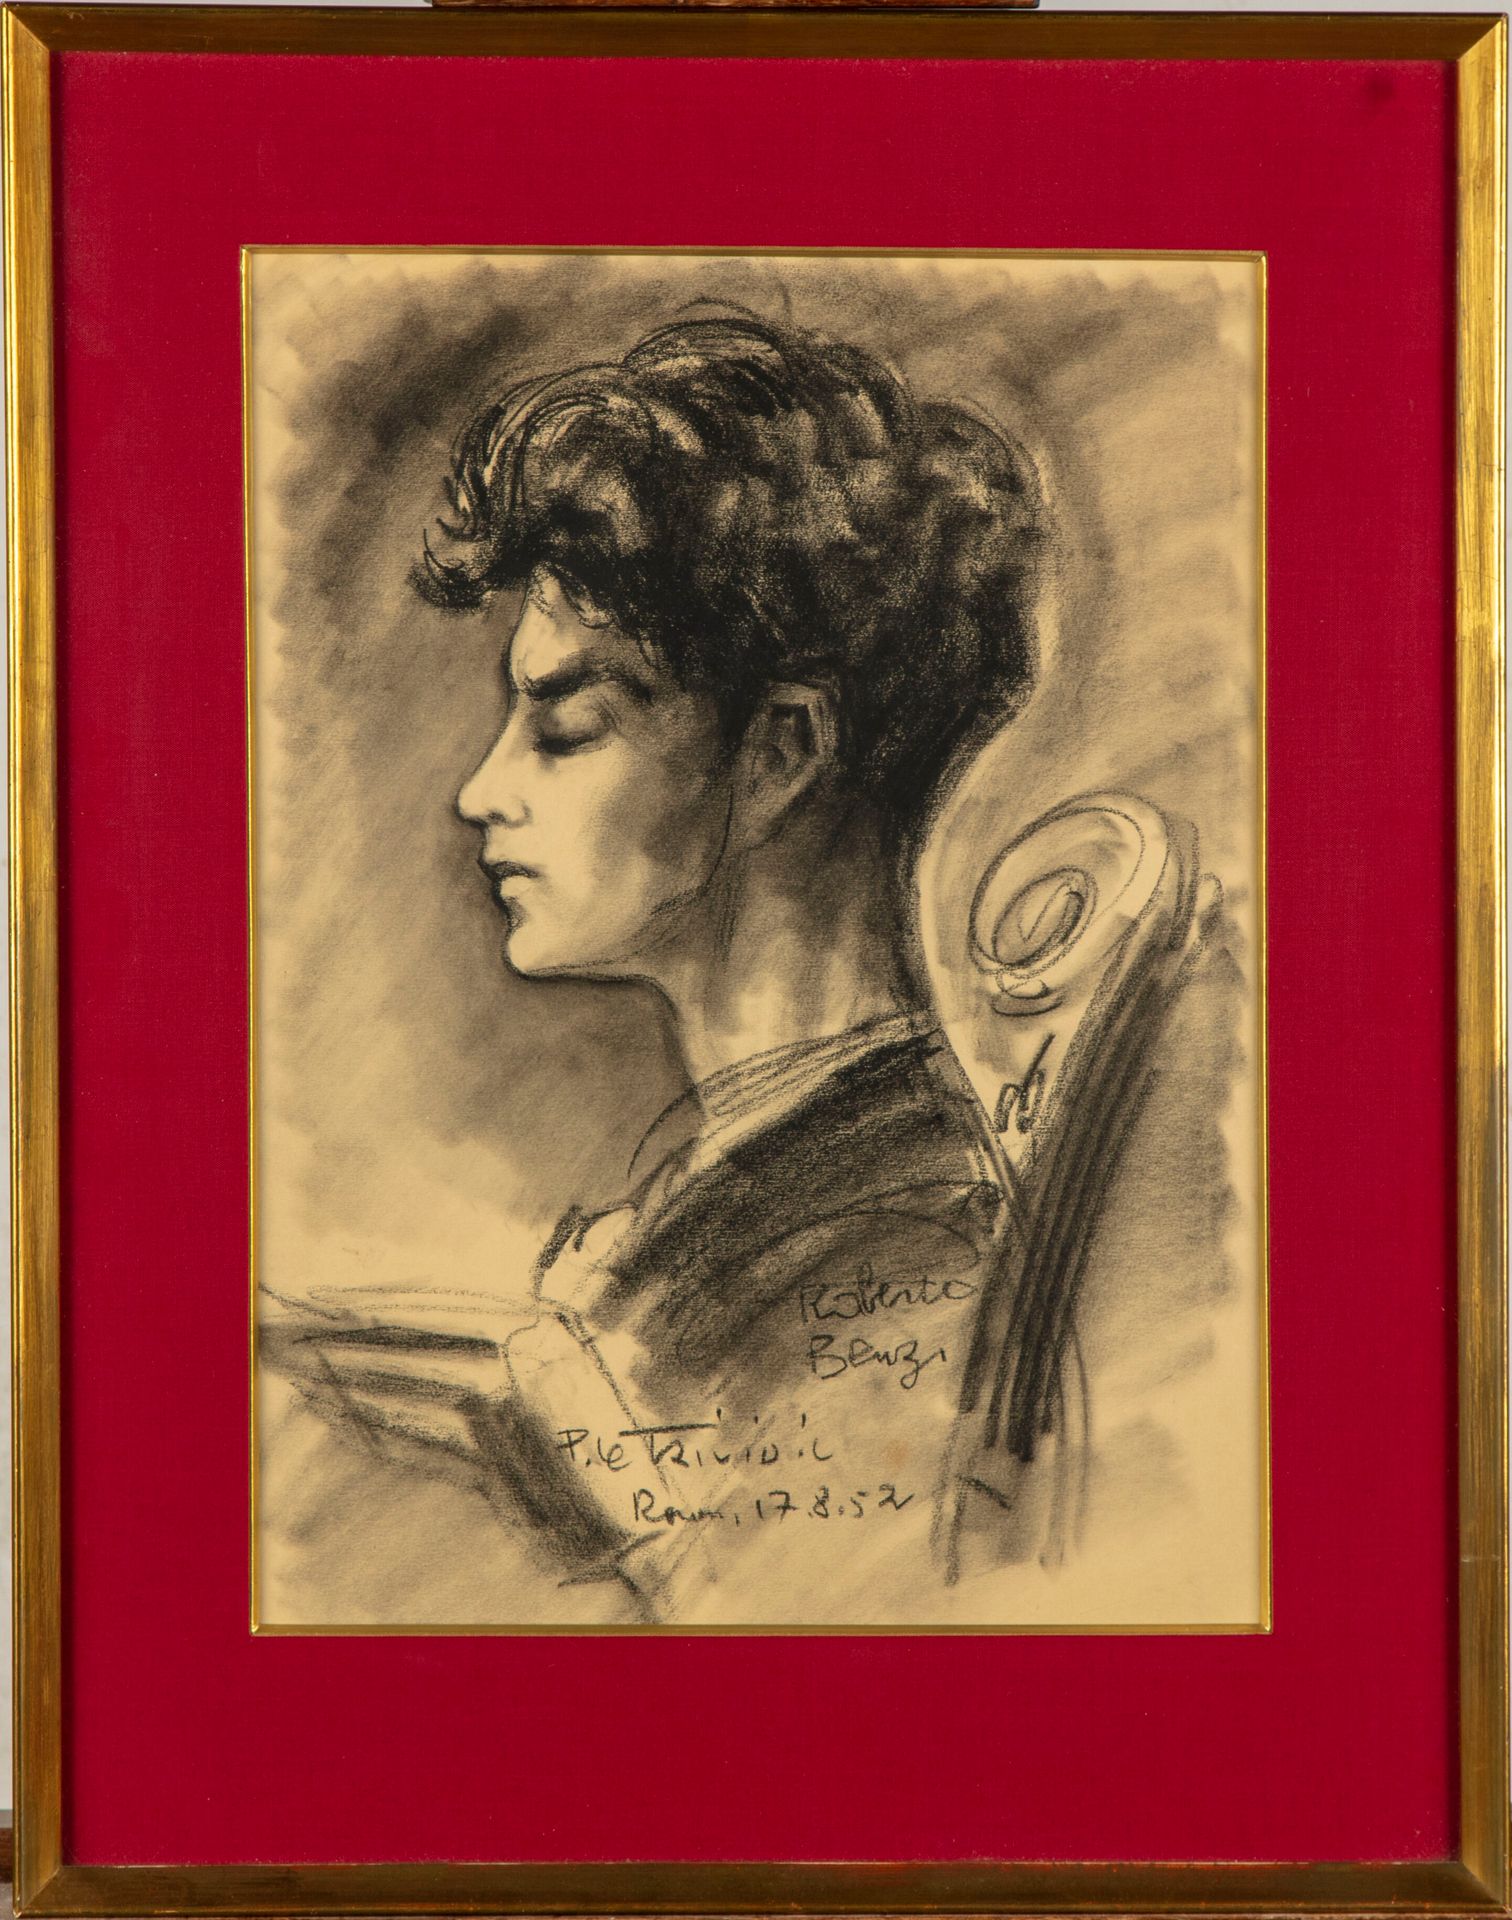 Null 皮埃尔-勒特里维迪克(1898-1960)

罗伯托-本齐的画像

炭笔，中下部有签名，日期为 "17.8.52"。

41 x 30 cm 正在观看